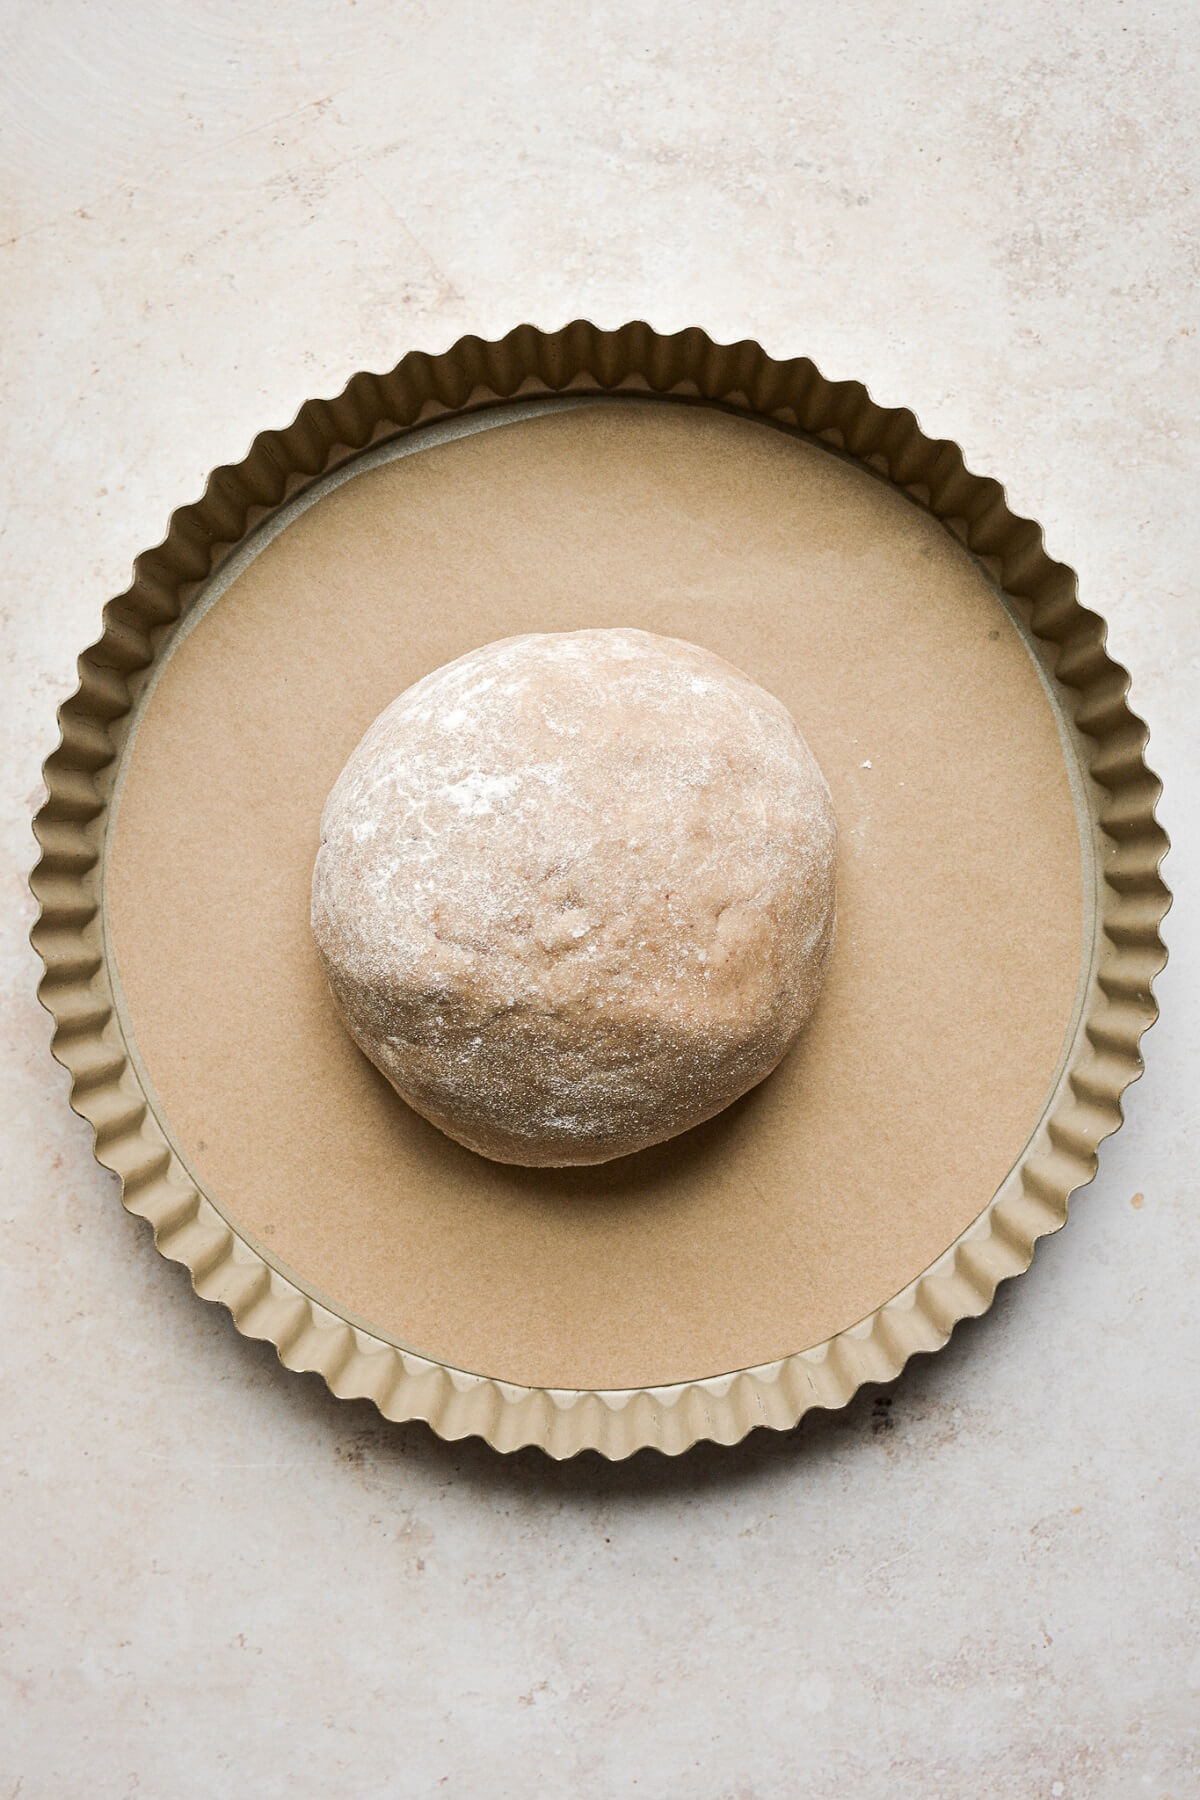 Shortbread dough in a tart pan.